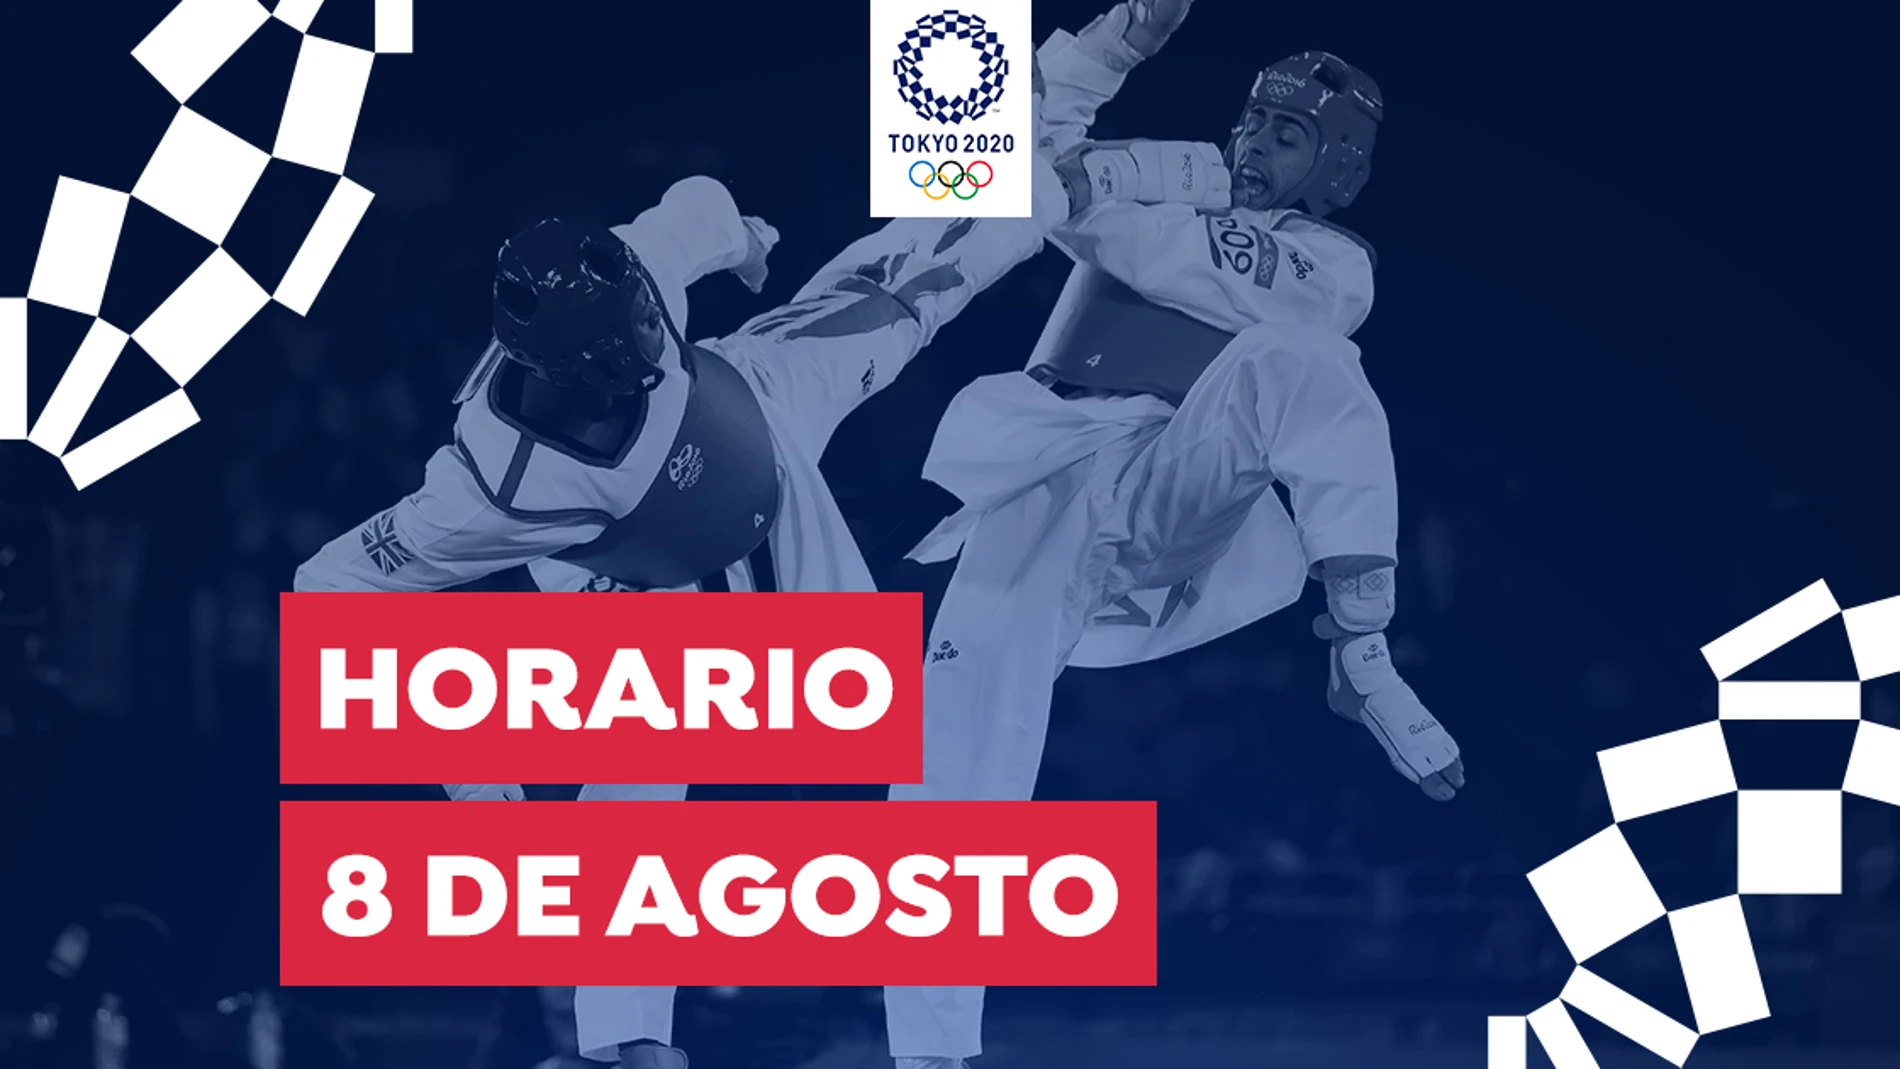 Juegos Olímpicos de Tokio: Horario y dónde ver las competiciones de España del domingo 8 de agosto